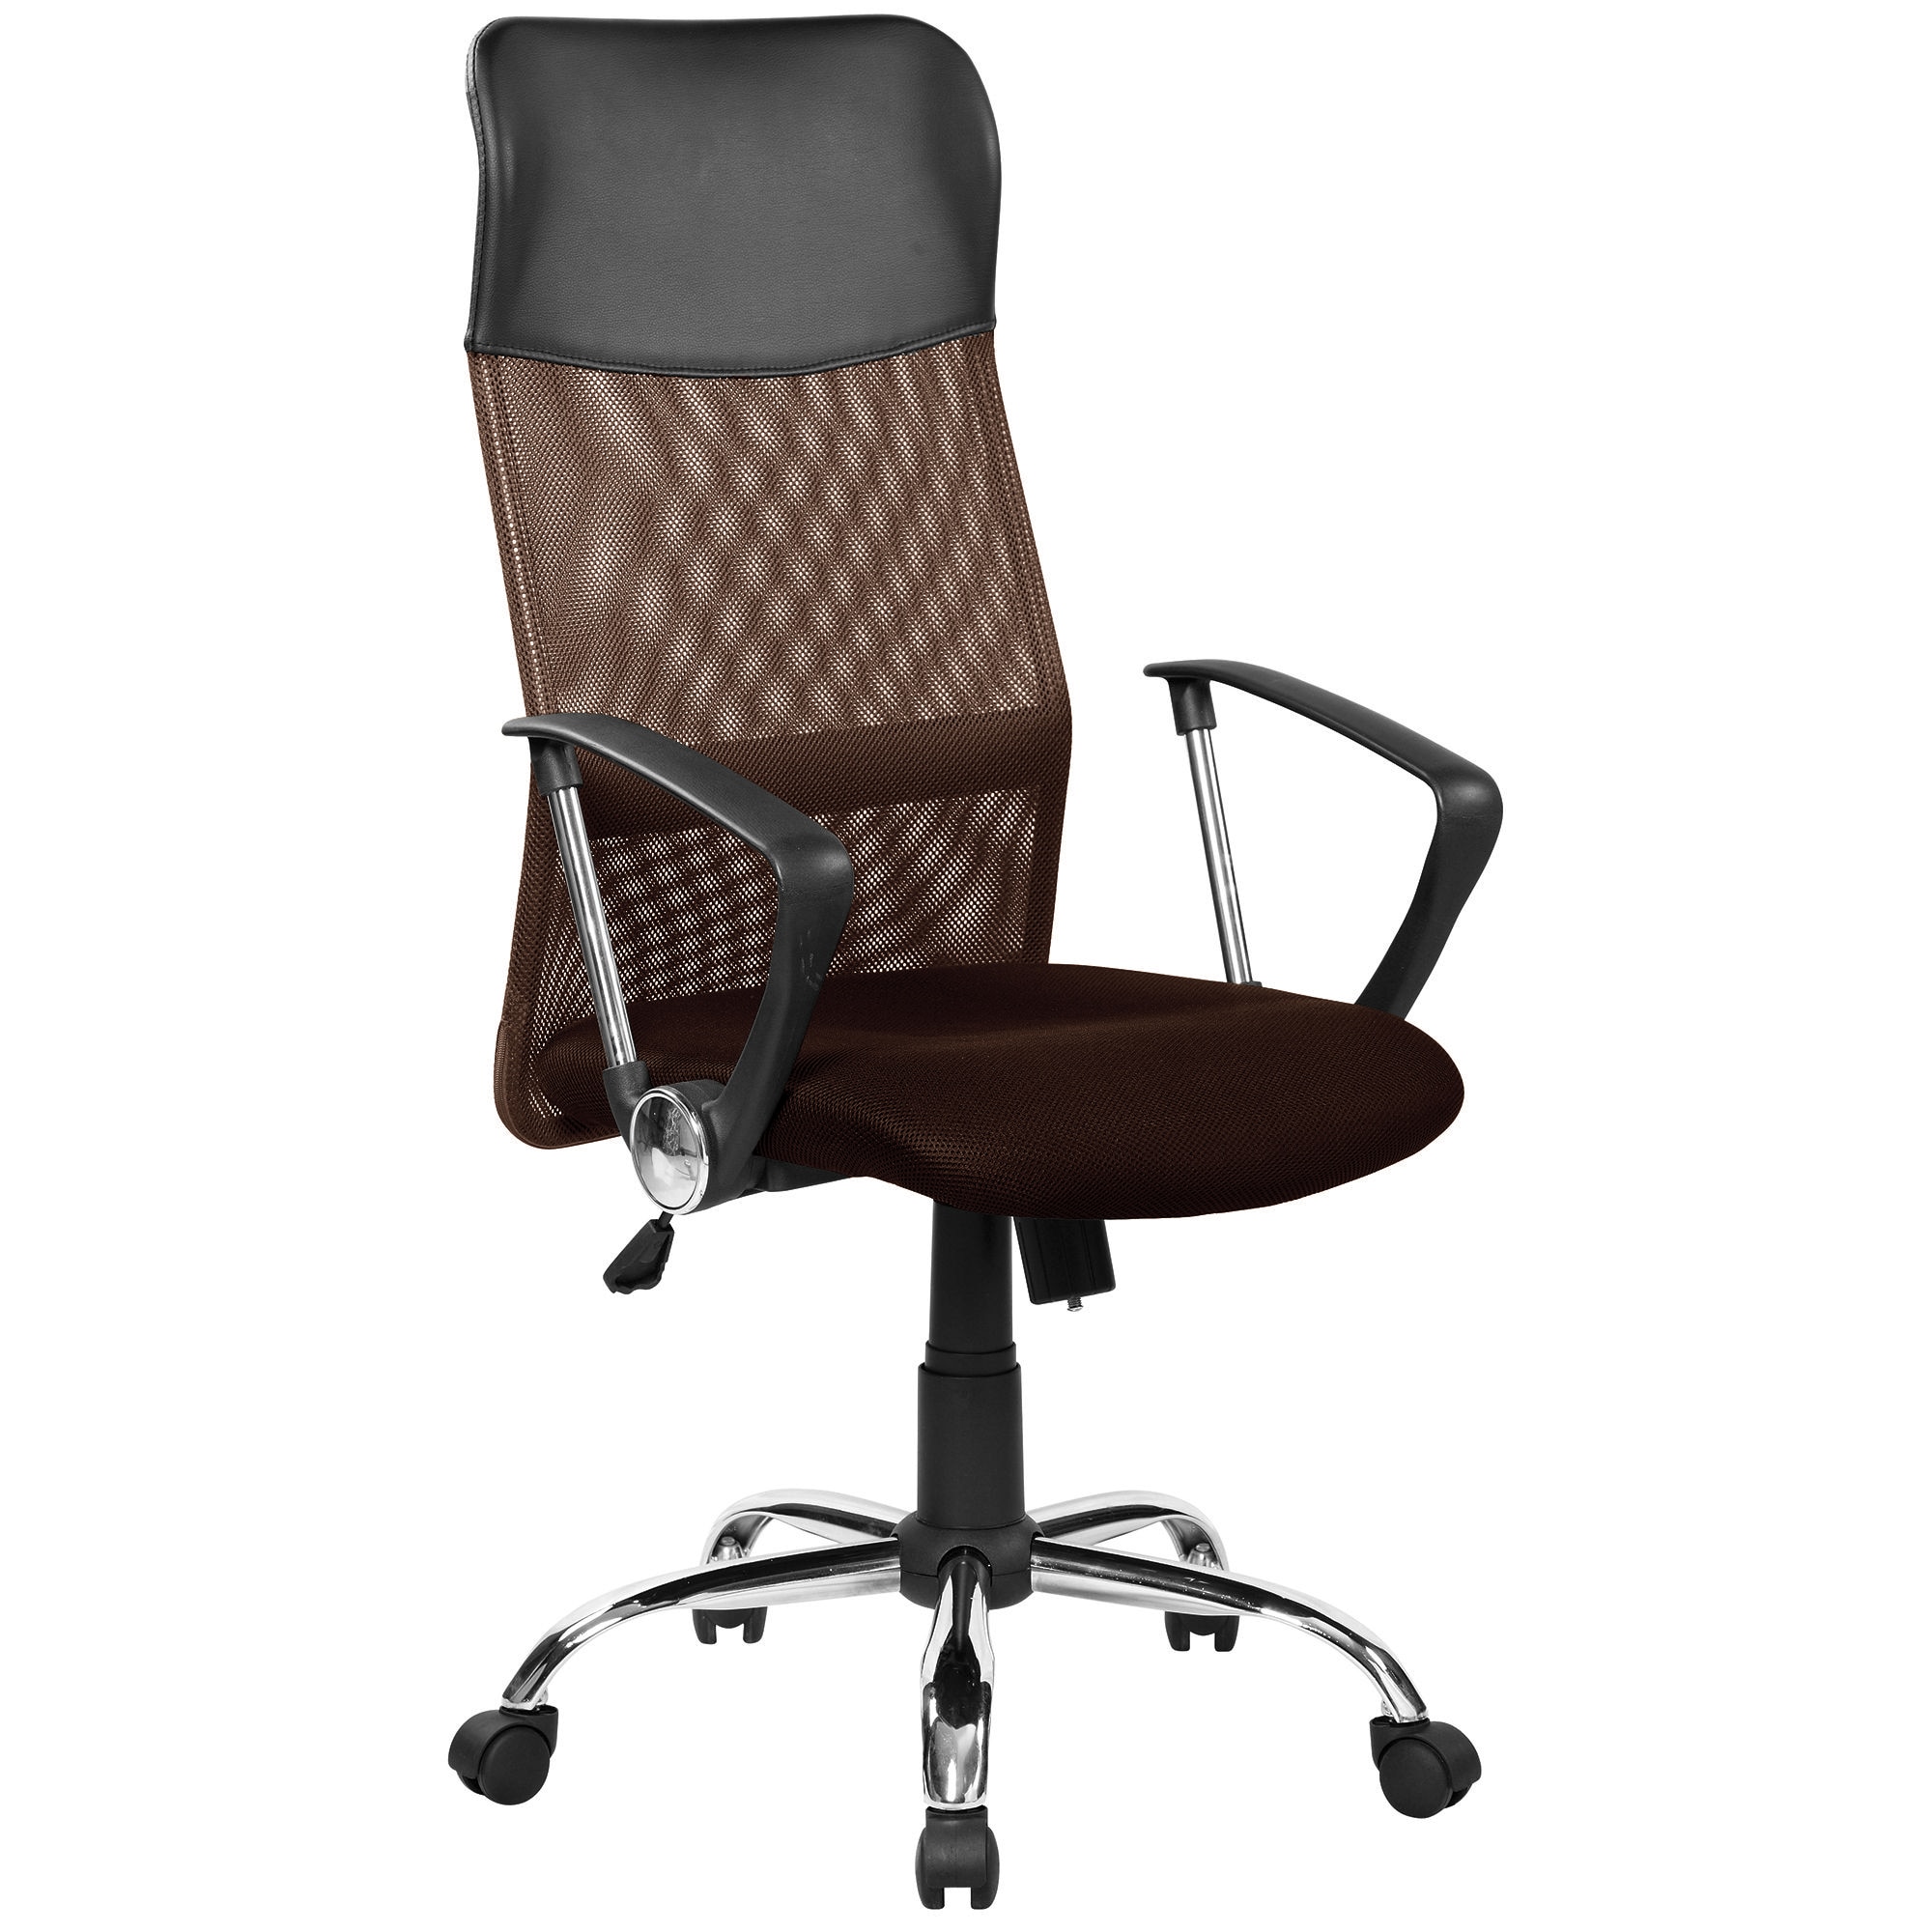 Офисное кресло m5. Кресло руководителя FX-139. Кресло direct 3012h. Кресло офисное с  стандарт BIFMA 5,1.